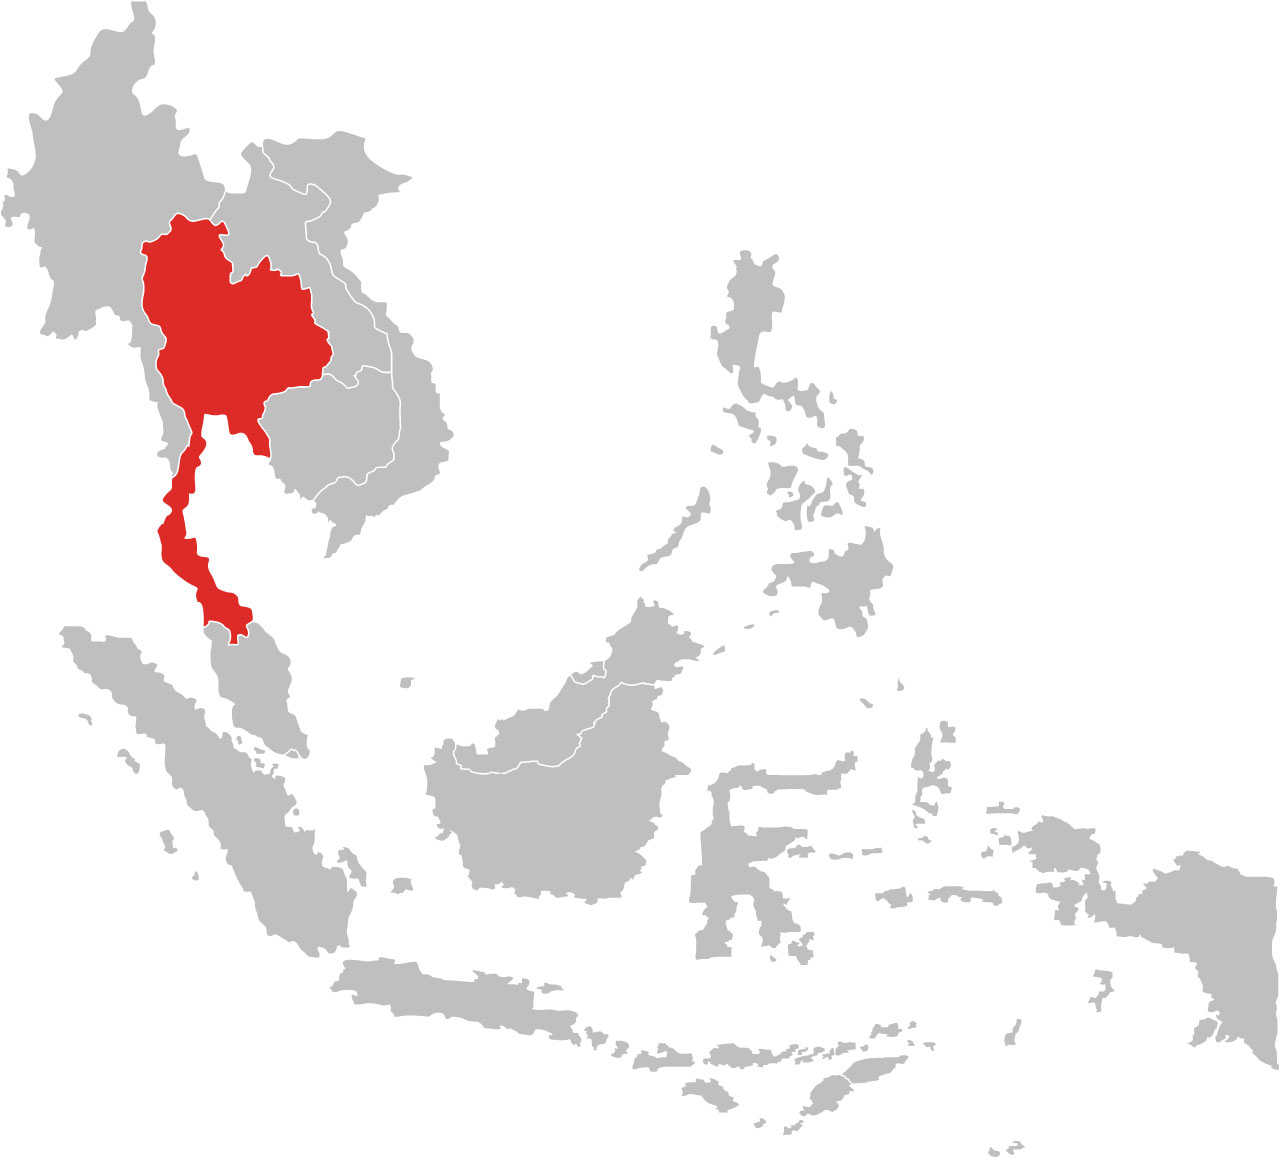 タイの地図